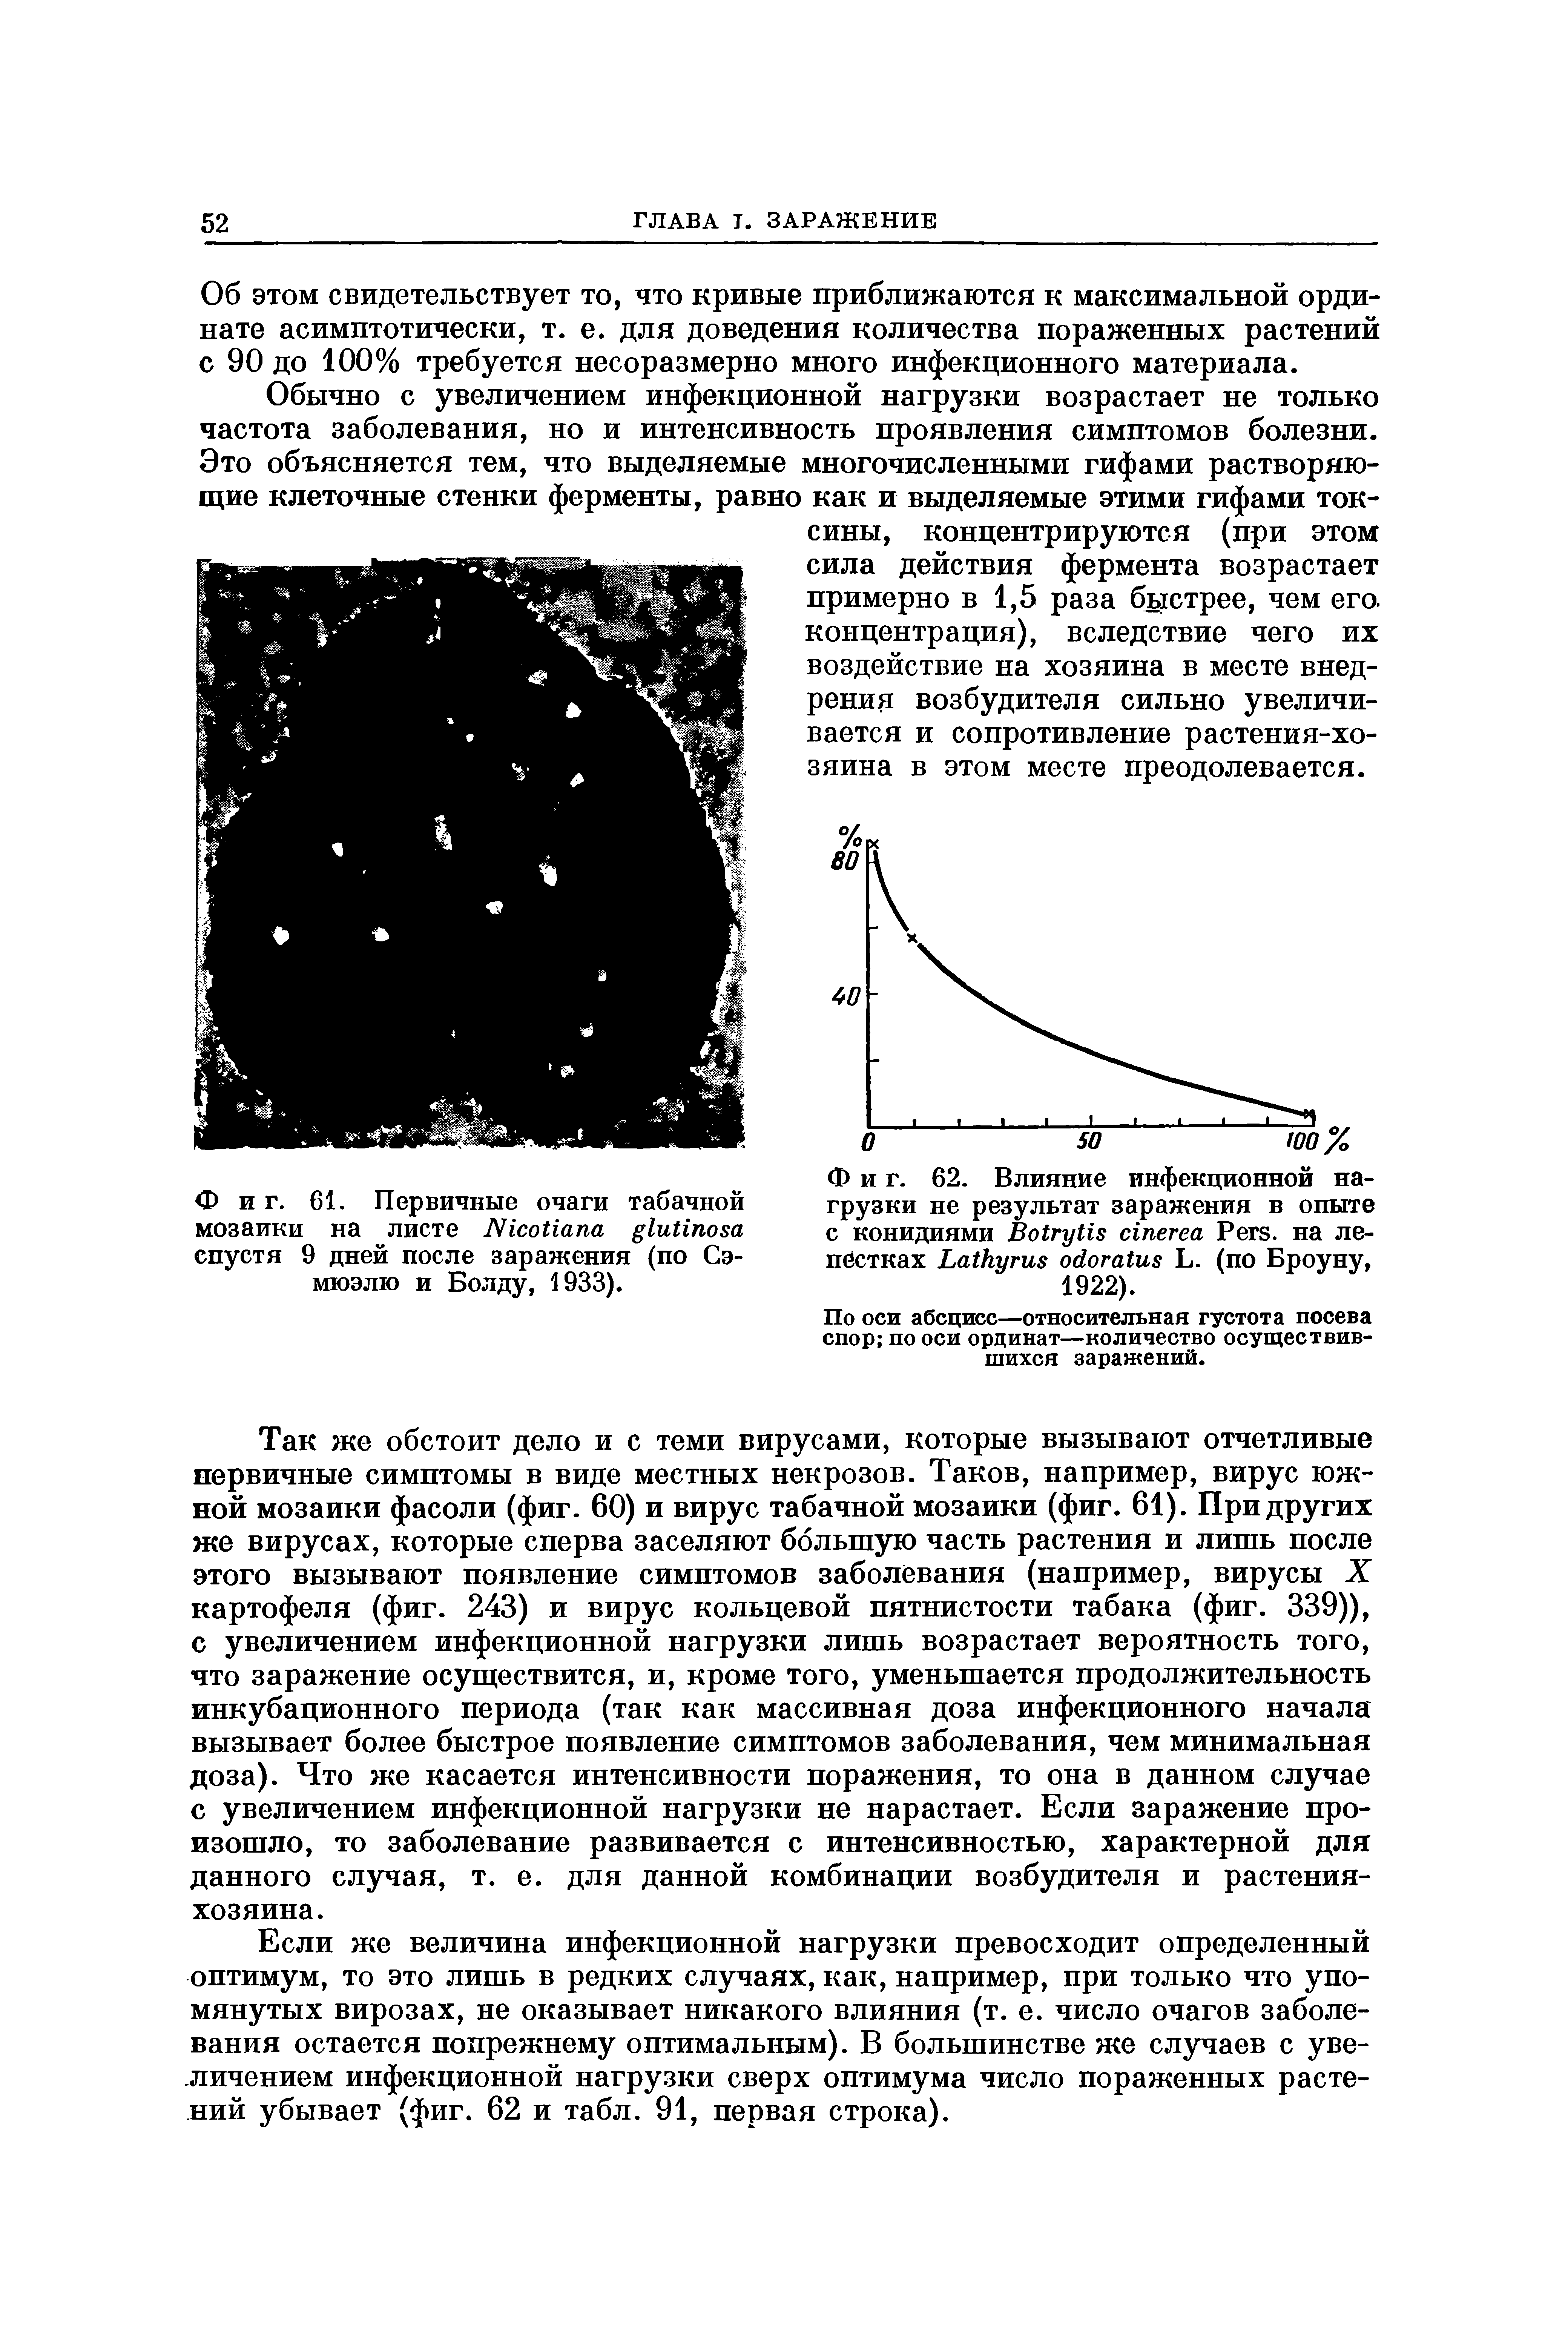 Фиг. 61. Первичные очаги табачной мозаики на листе N спустя 9 дней после заражения (по Сэмюэлю и Болду, 1933).